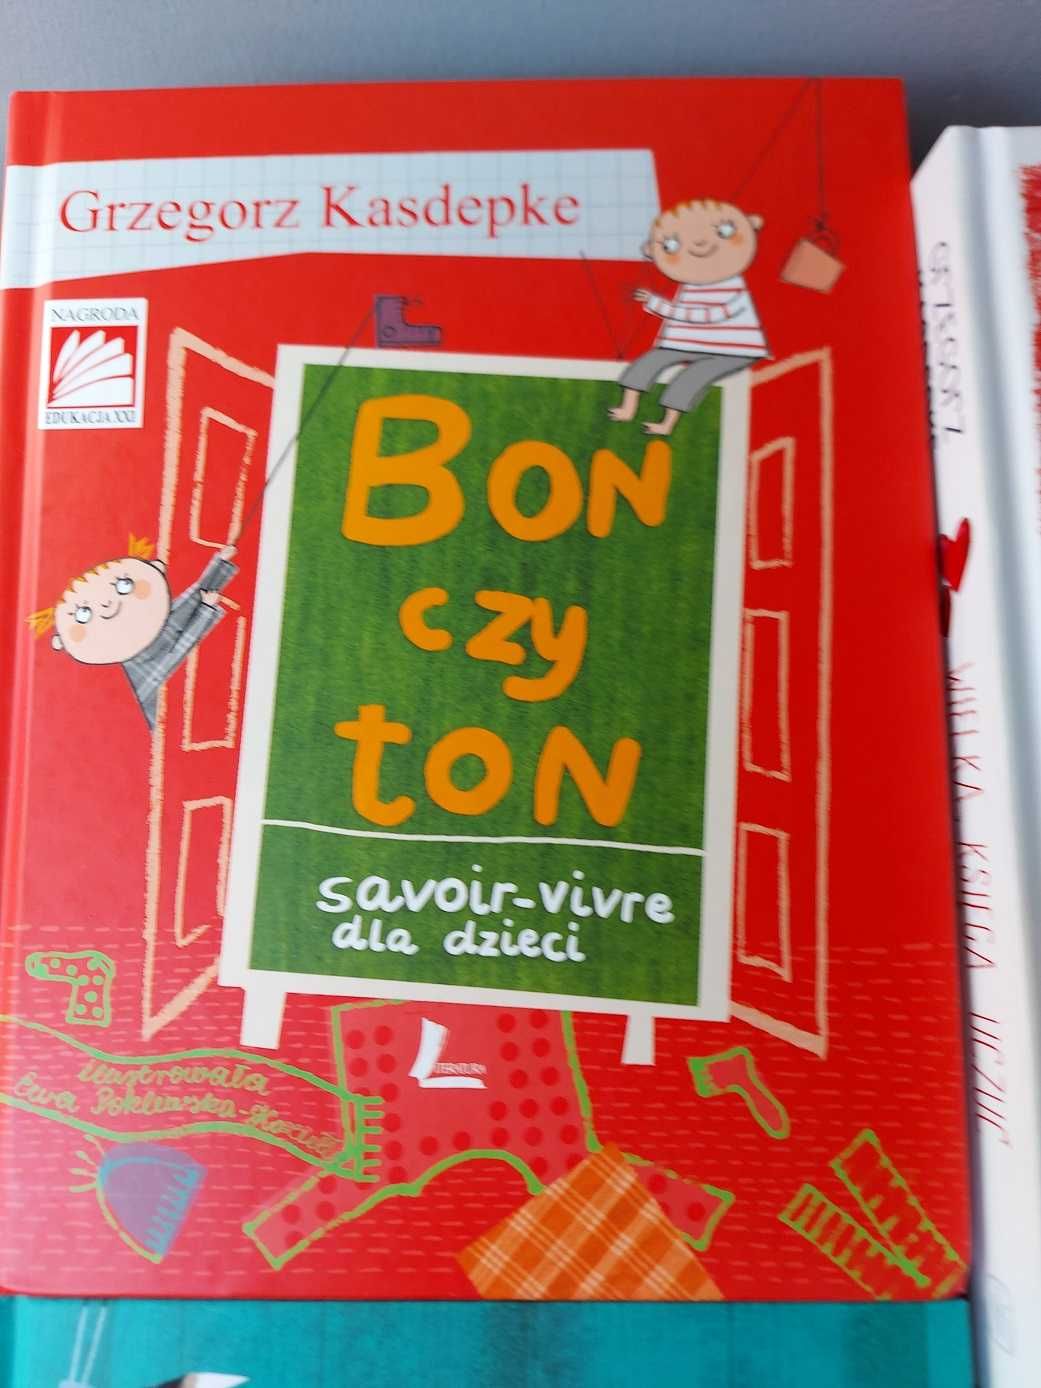 Książki dla dzieci zestaw 4 szt. autor Grzegorz Kasdepke